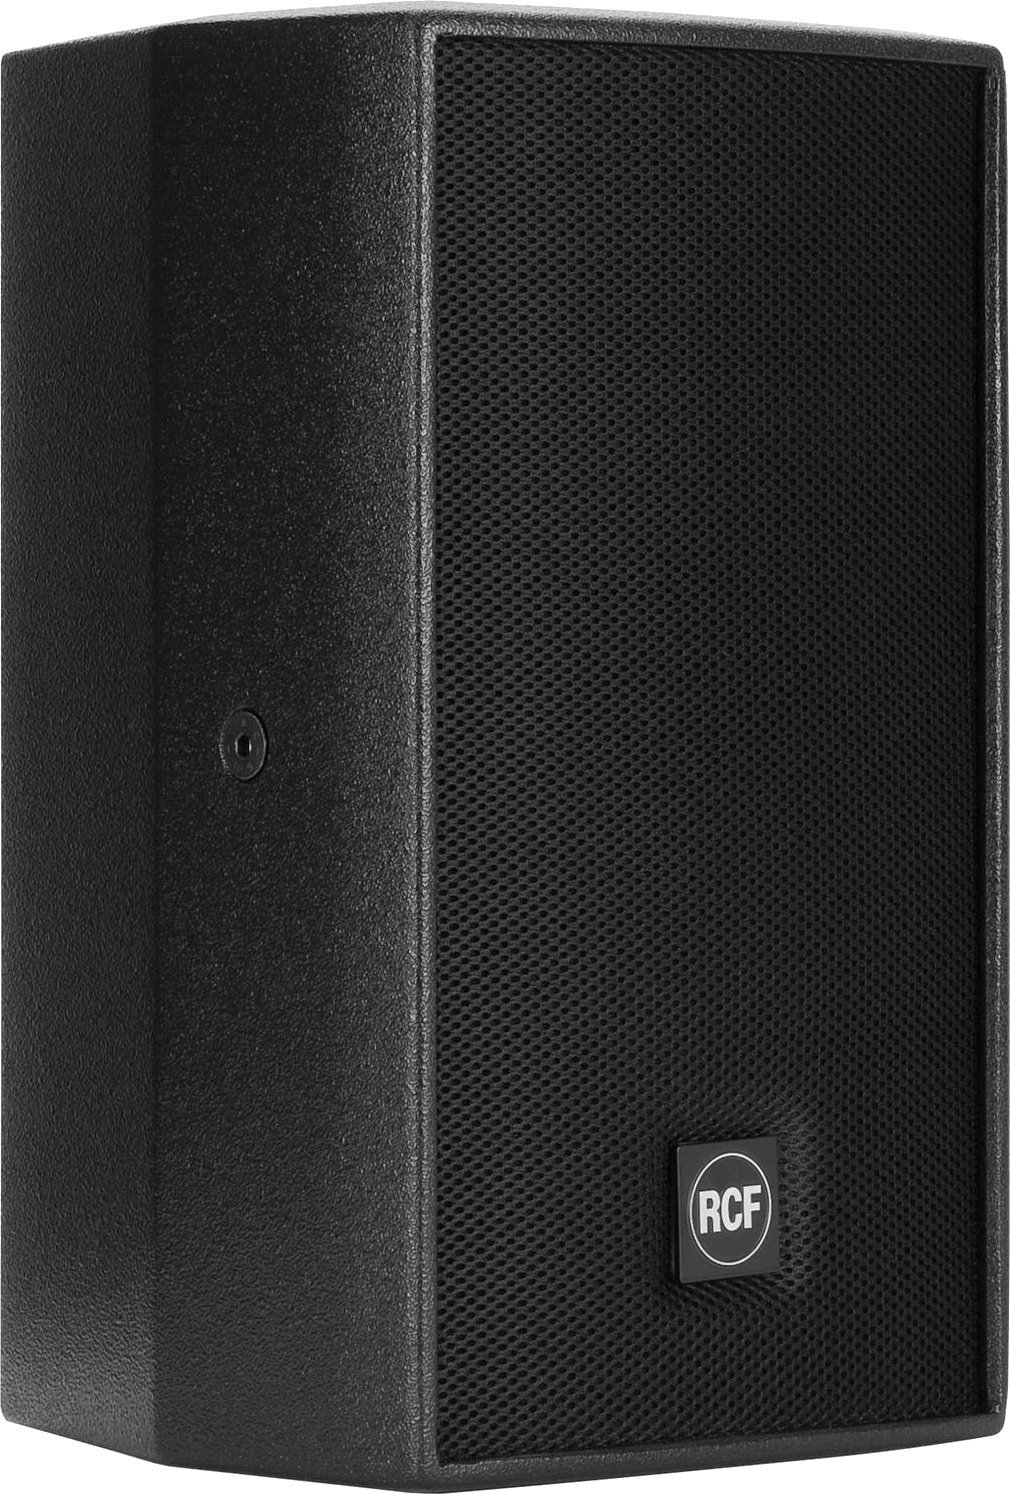 Passive Loudspeaker RCF C3110-126 Passive Loudspeaker